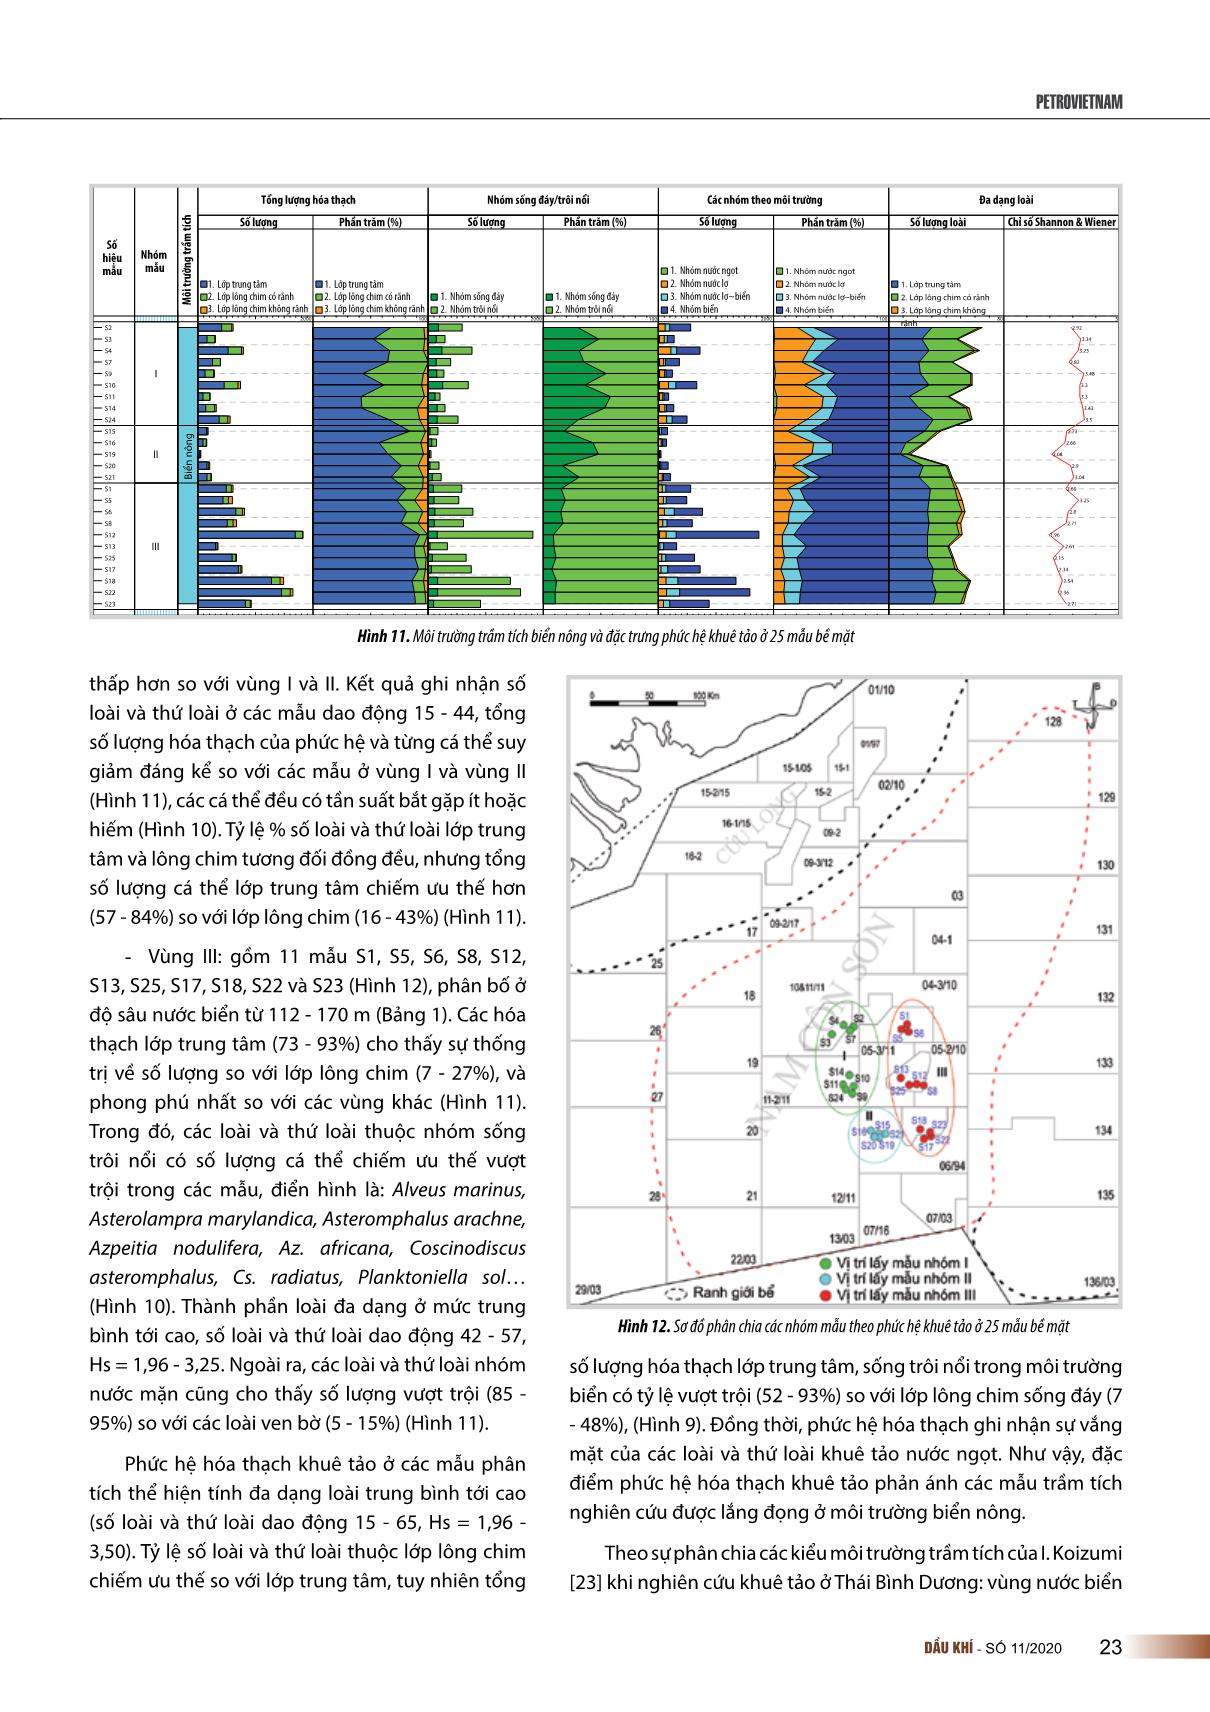 Phức hệ hóa thạch khuê tảo trong các trầm tích bề mặt đáy biển ở khu vực Đông Nam bể Nam Côn Sơn trang 7